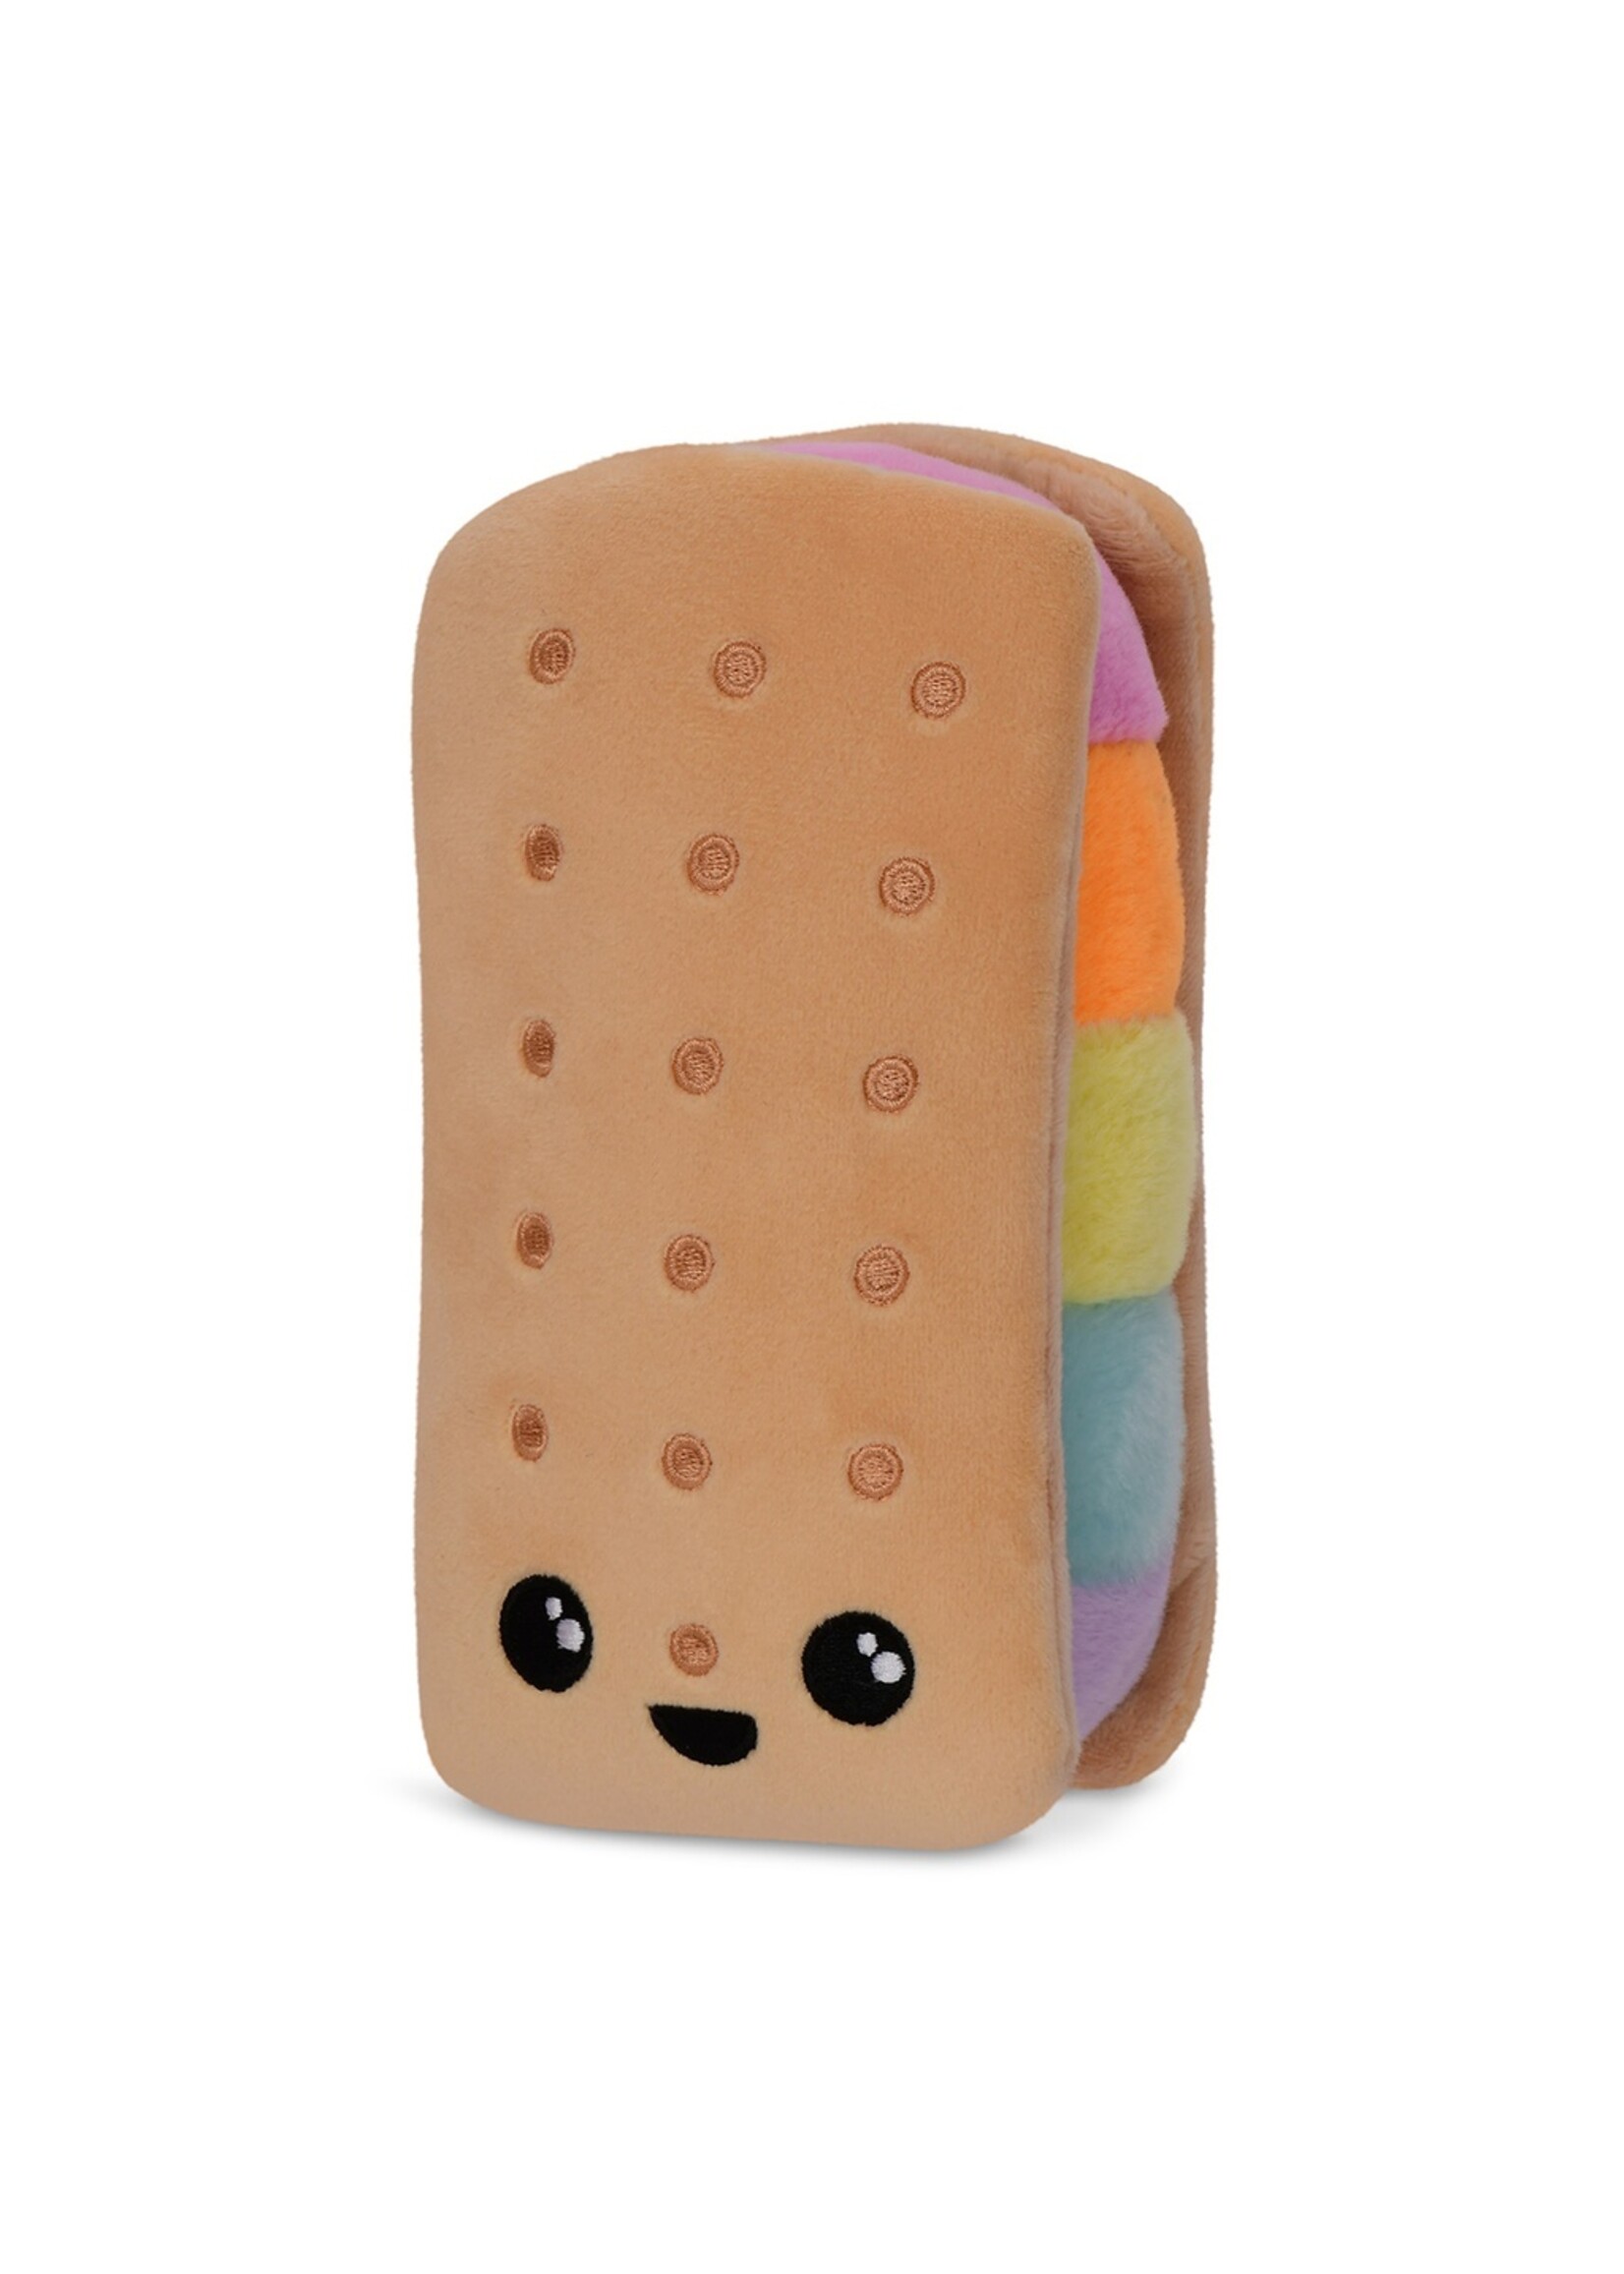 Iscream IScream Ice Cream Sandwich Mini Plush